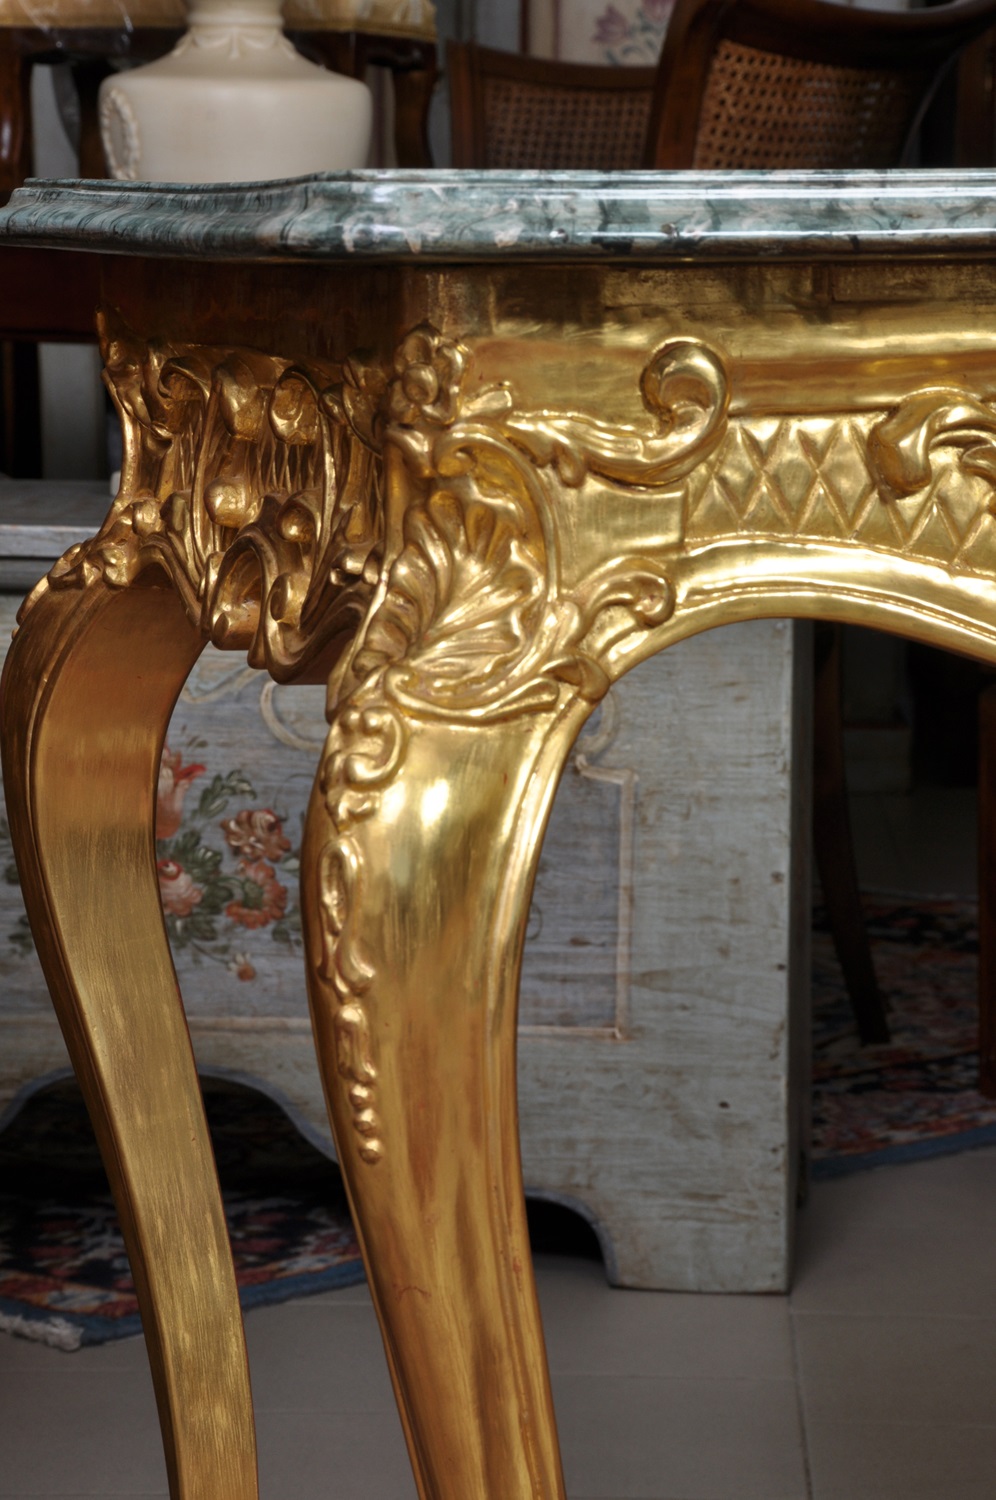 costruzione made in Italy di un tavolo consolle sagomato e intagliato nello stile veneziano a mano, laccato in oro zecchino consumato, pregiato manufatto di lusso